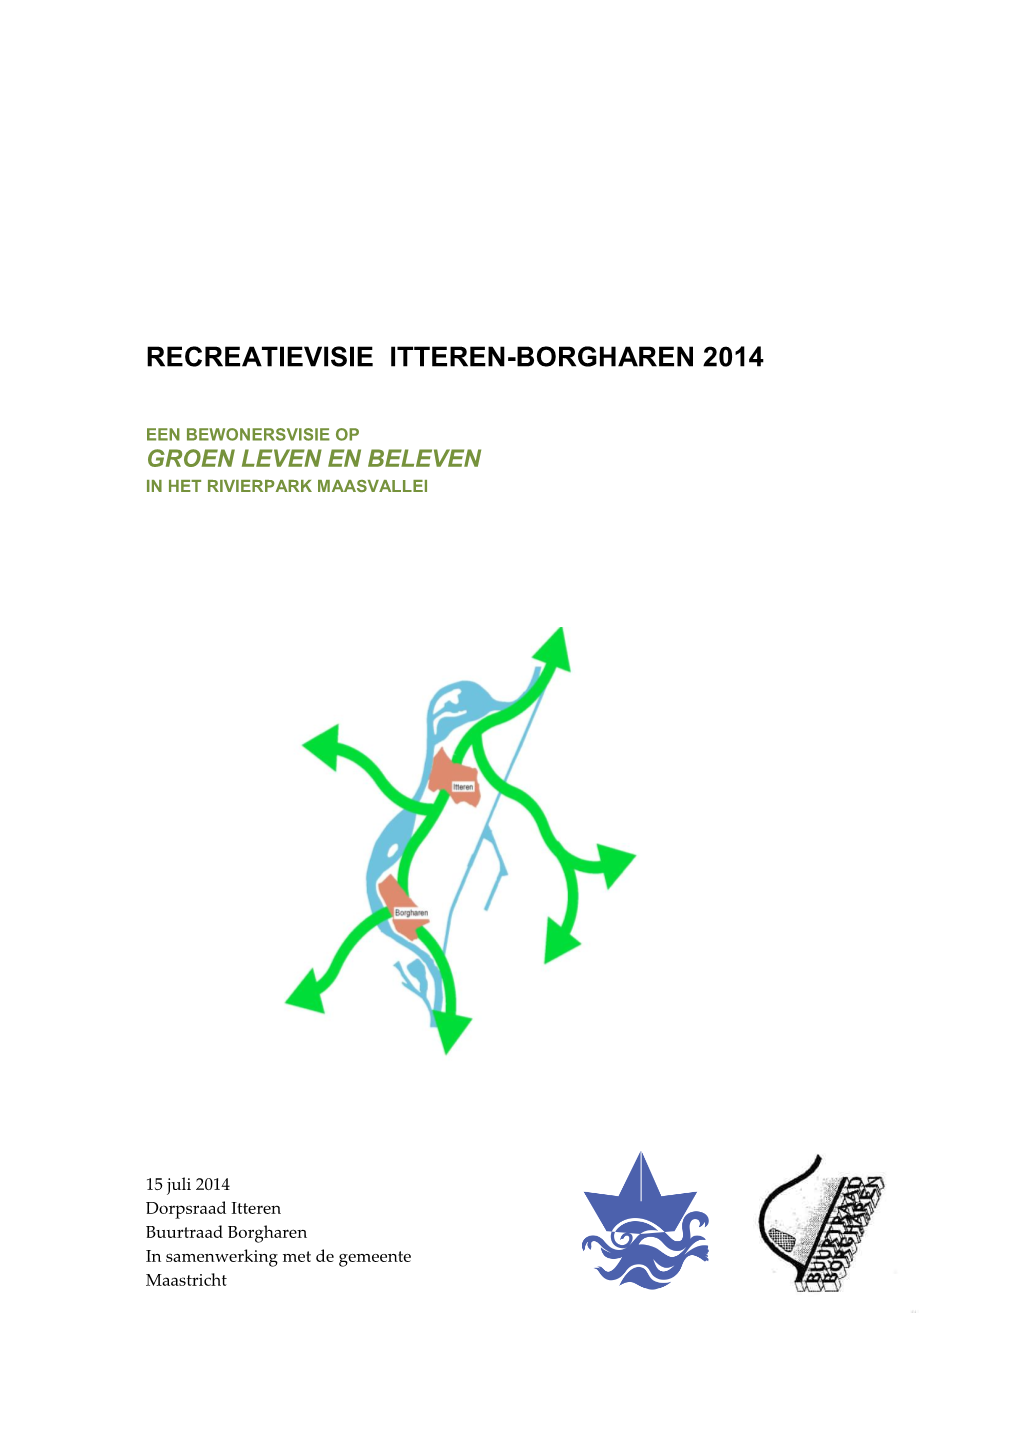 Recreatievisie Itteren-Borgharen 2014